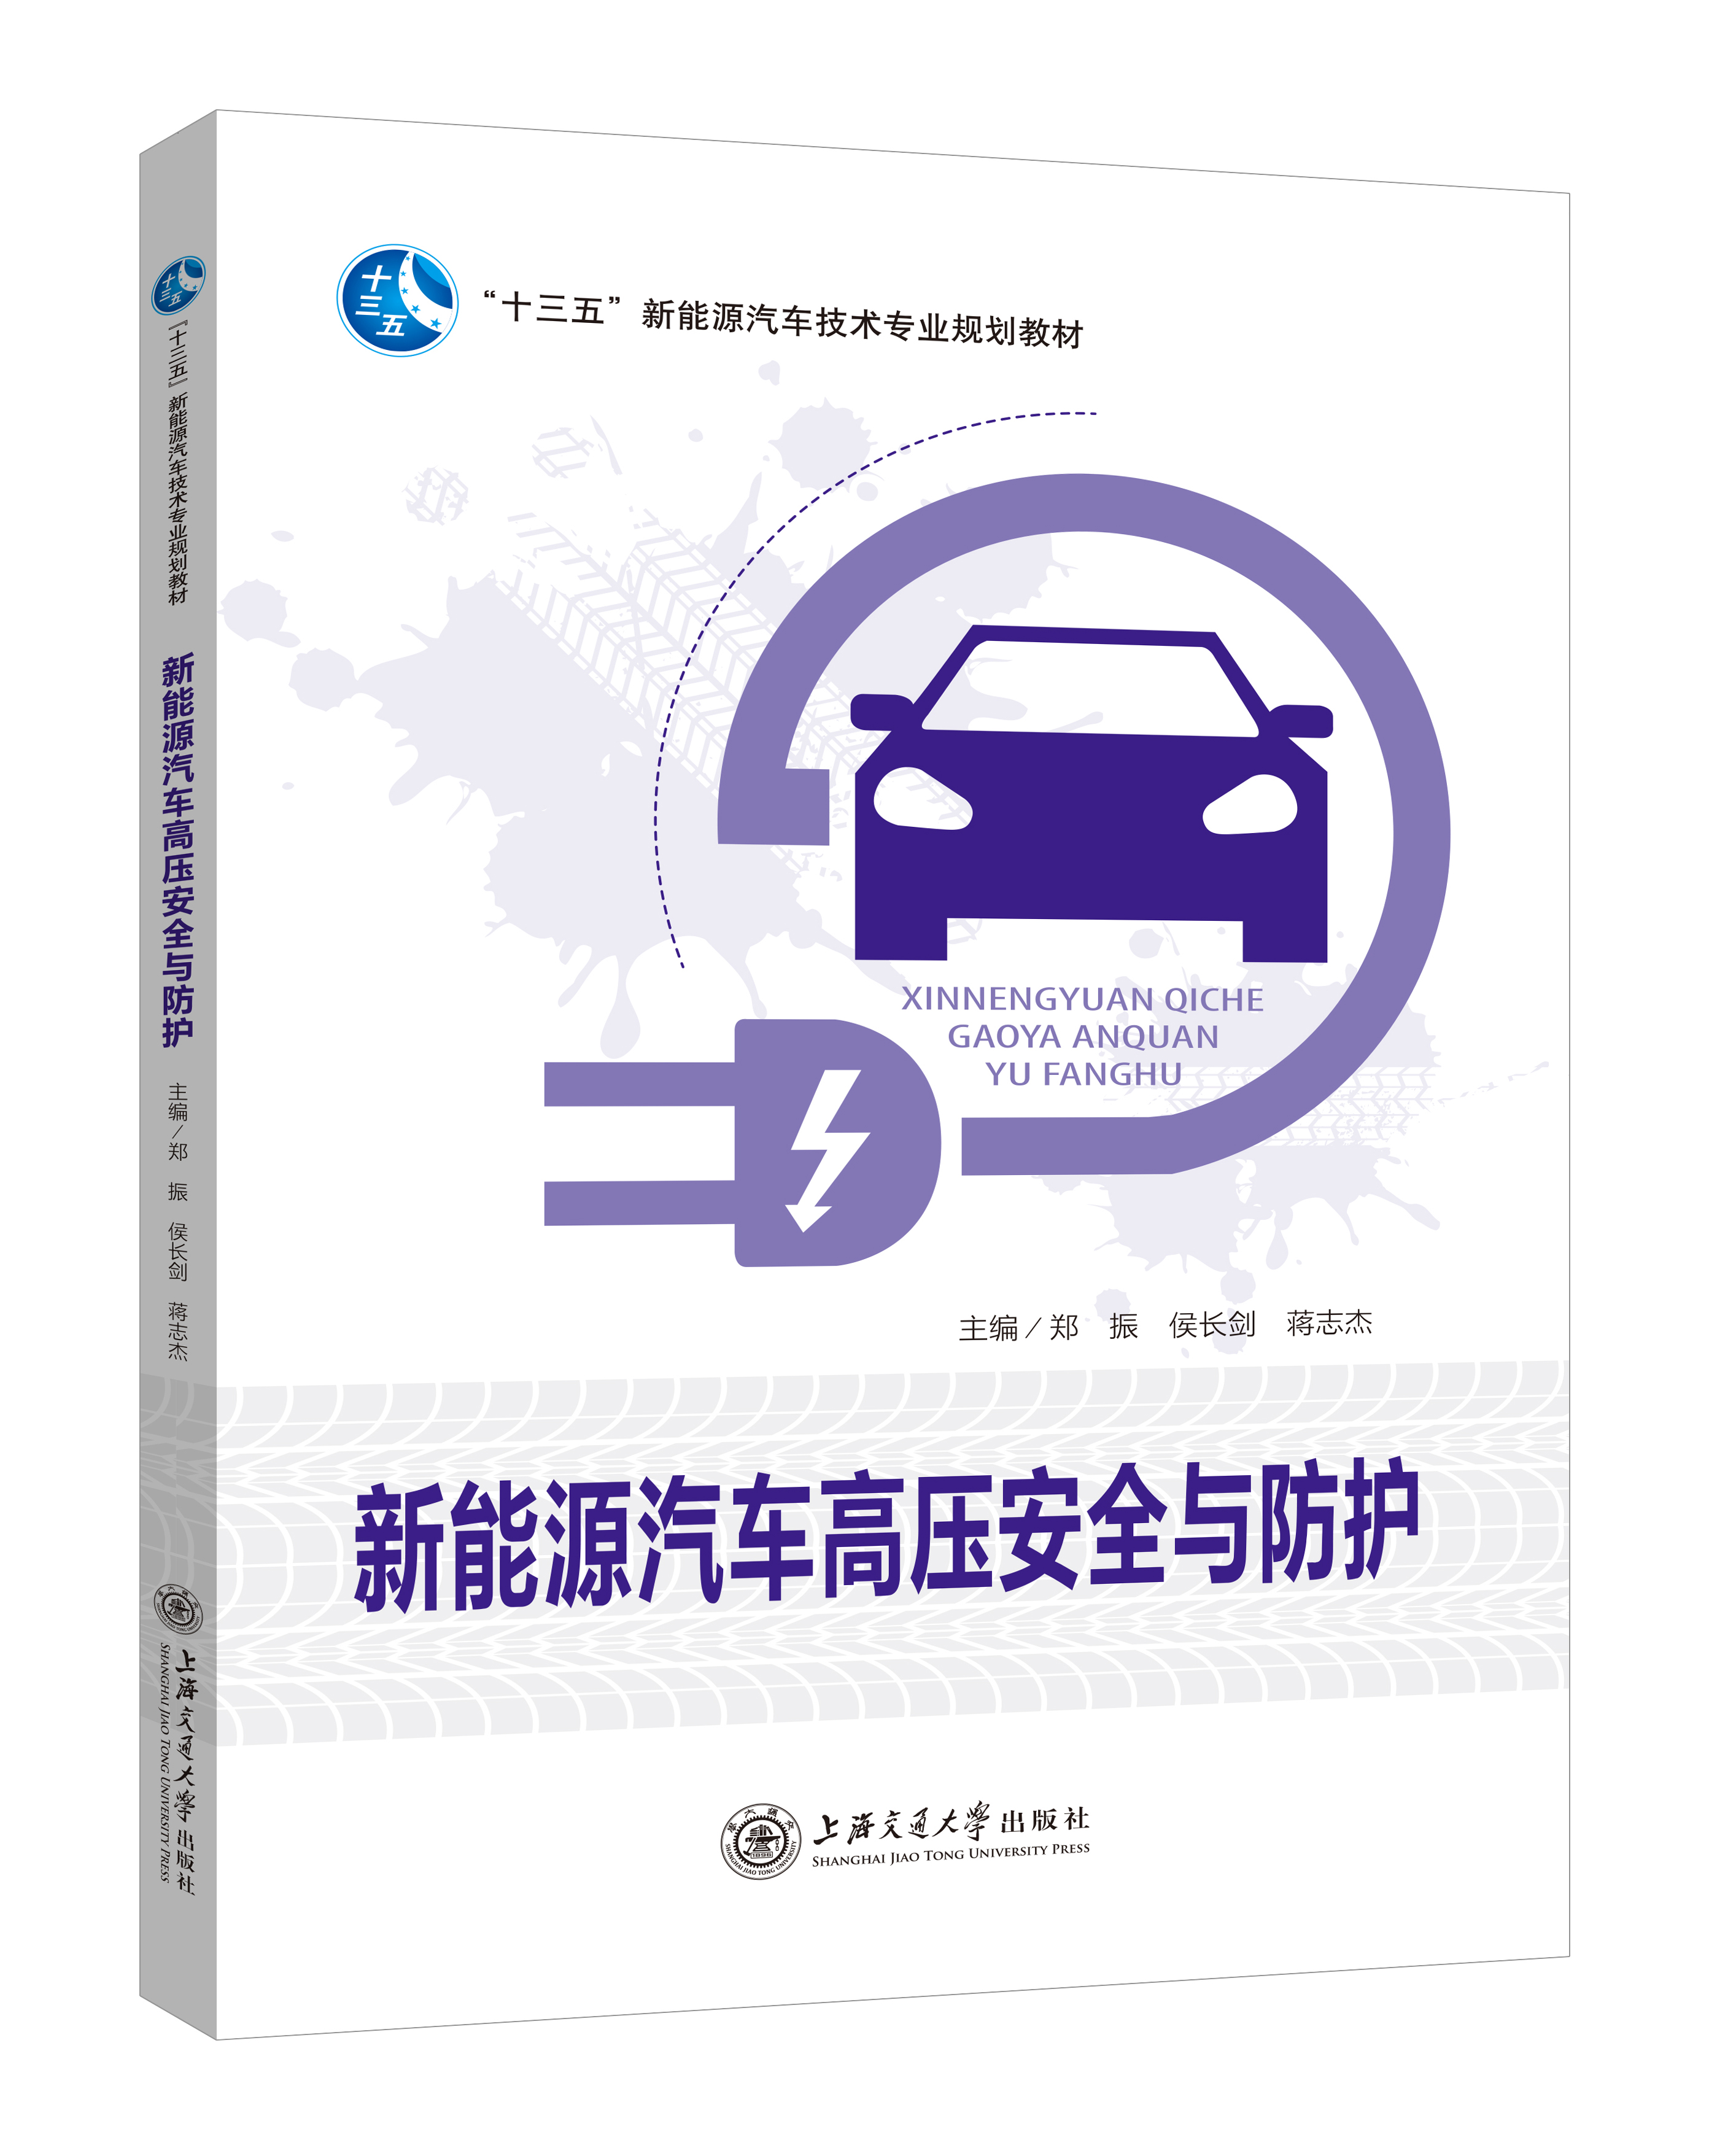 《新能源汽车高压安全与防护》(双色版)